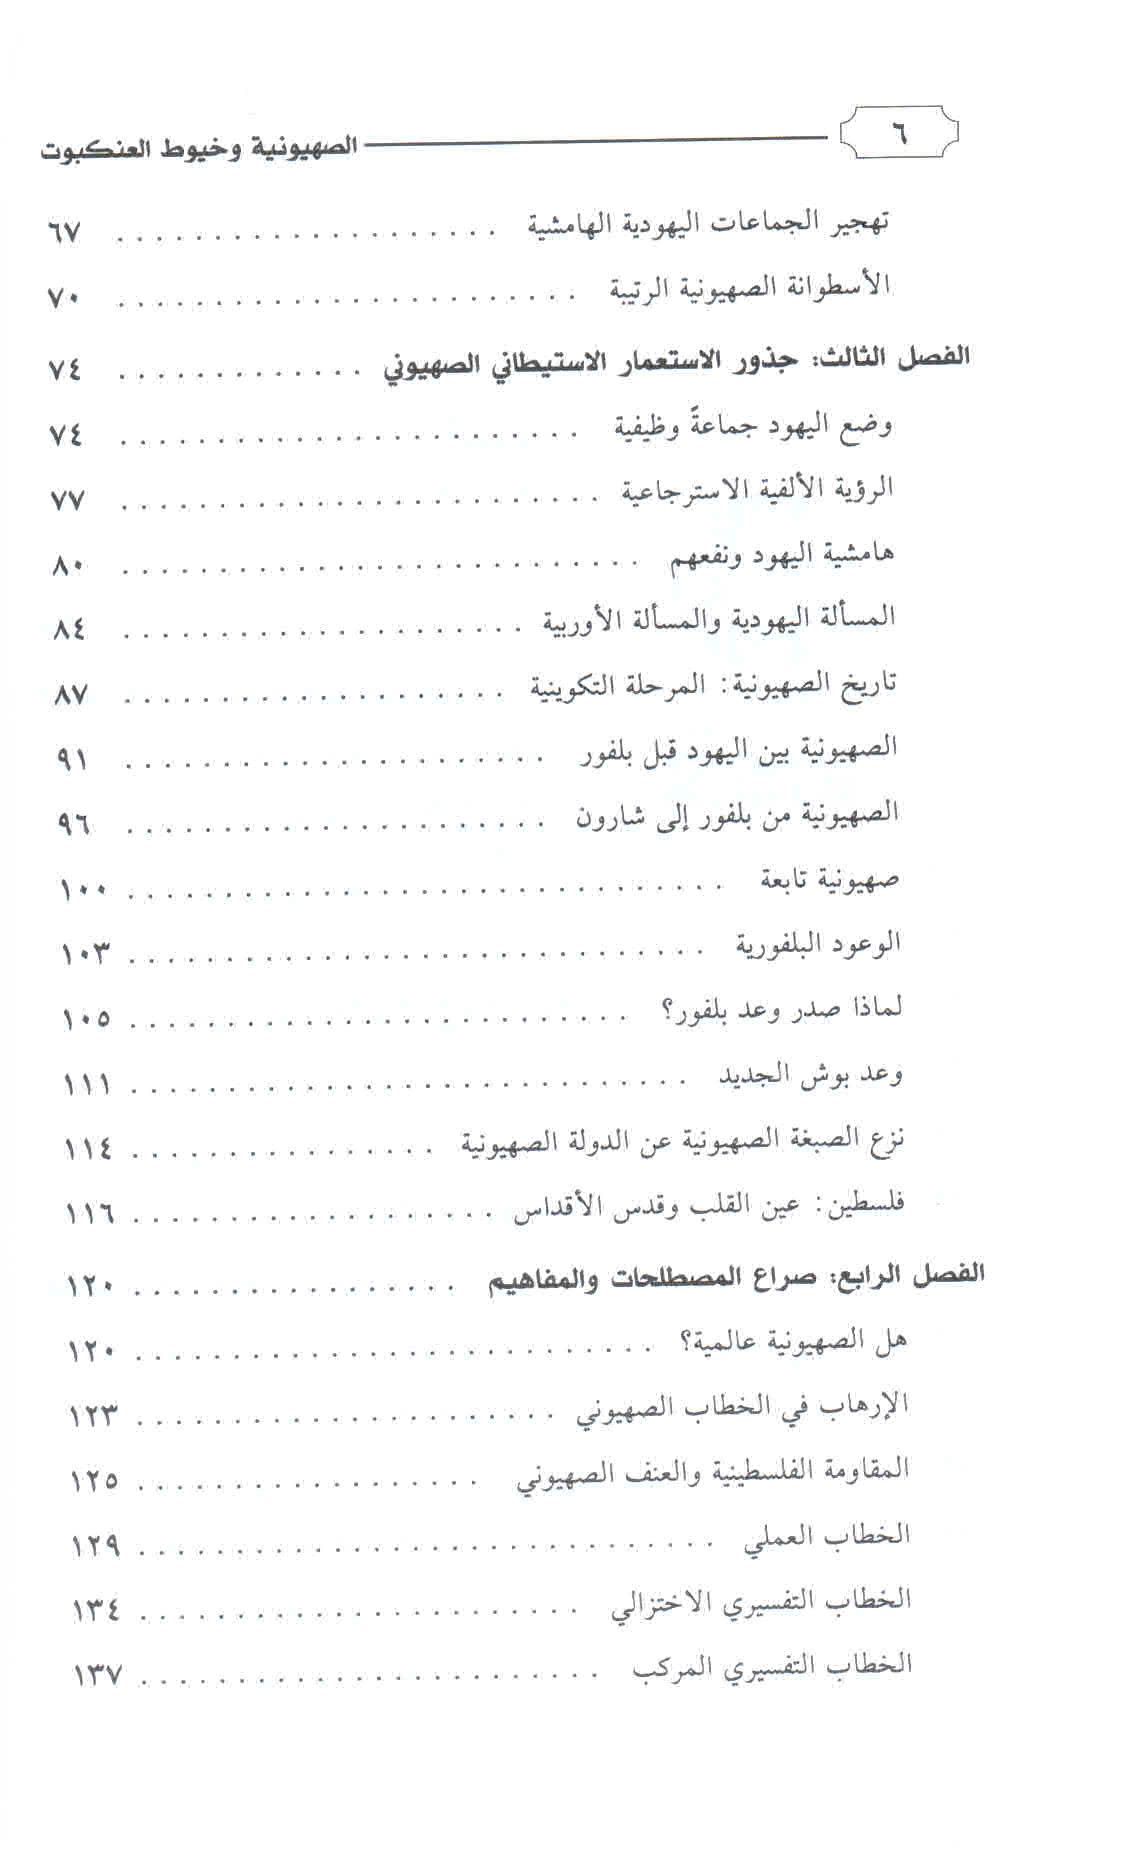 قائمة محتويات كتاب الصهيونية وخيوط العنكبوت ص. 6.